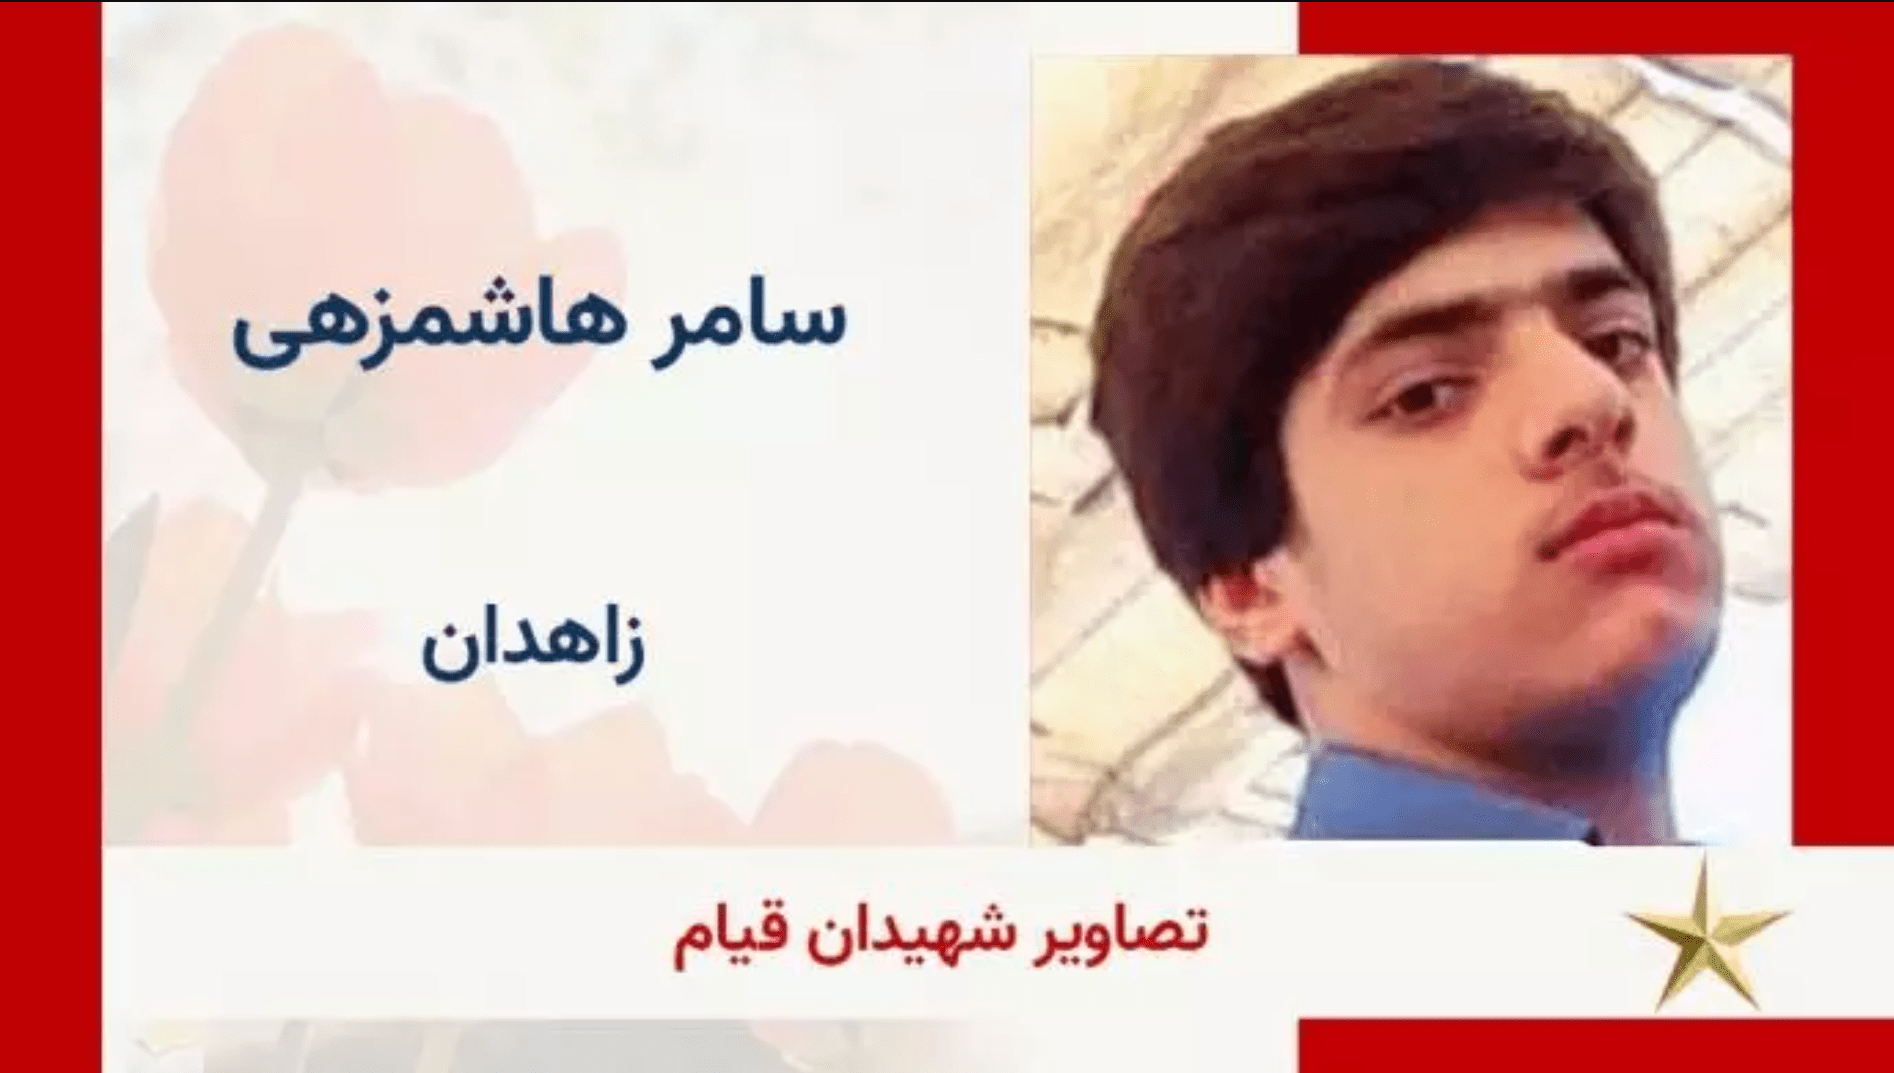 قتل سامر هاشم زهی نوجوان ۱۵ ساله بلوچ در جمعه خونین زاهدان تائید شد